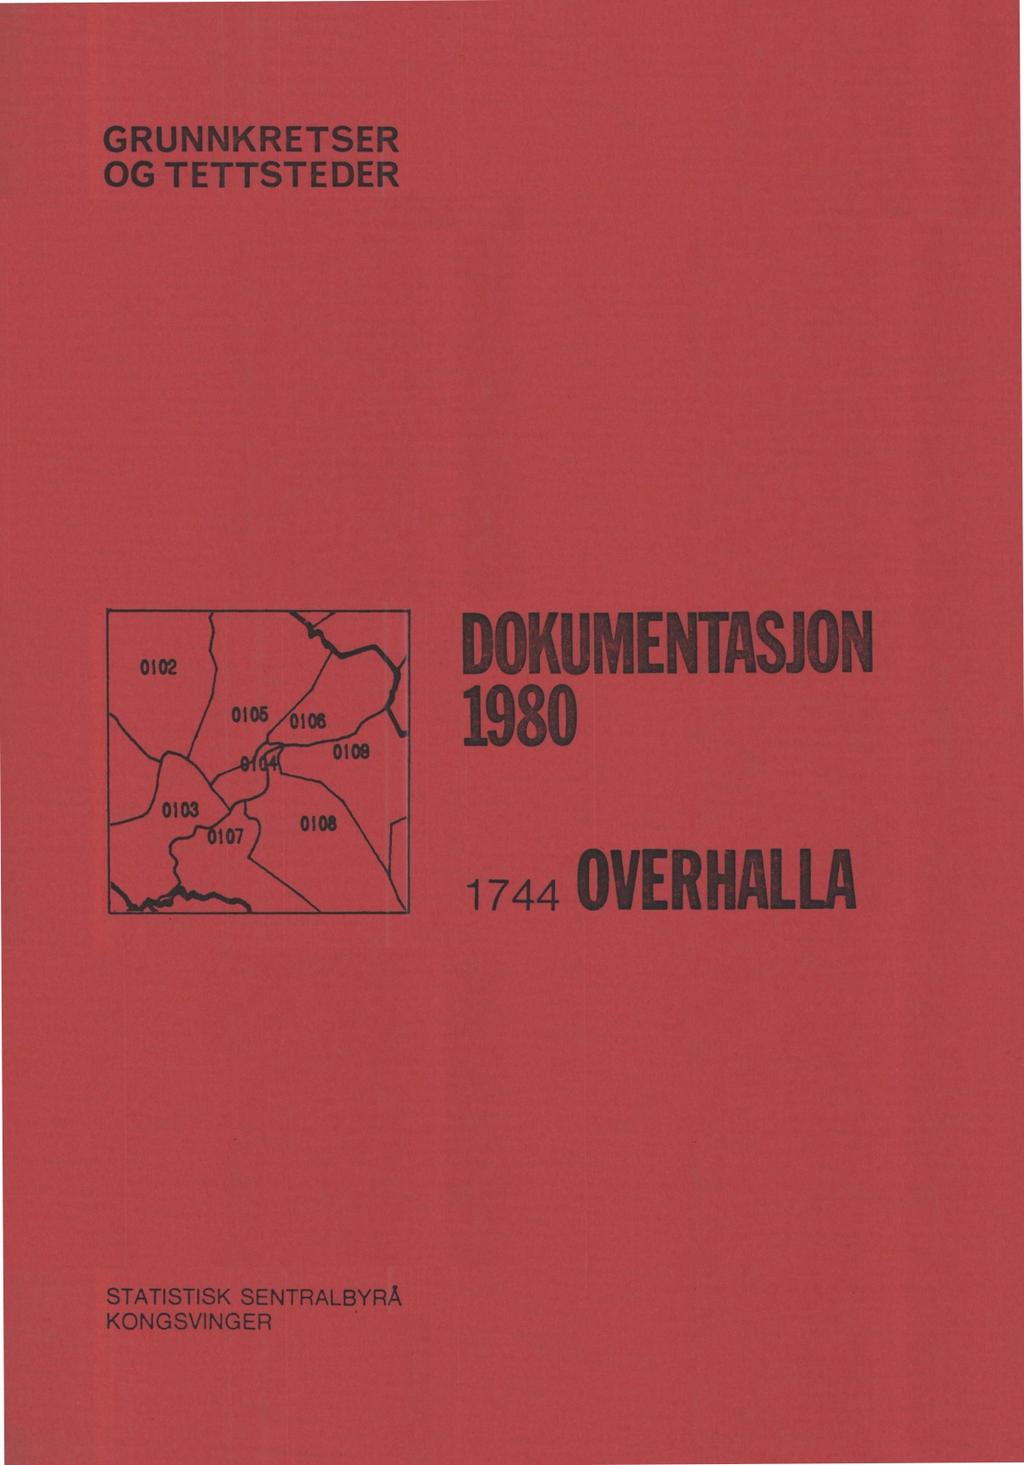 GRUNNKRETSER OG TETTSTEDER DOM ENTASJON 1980